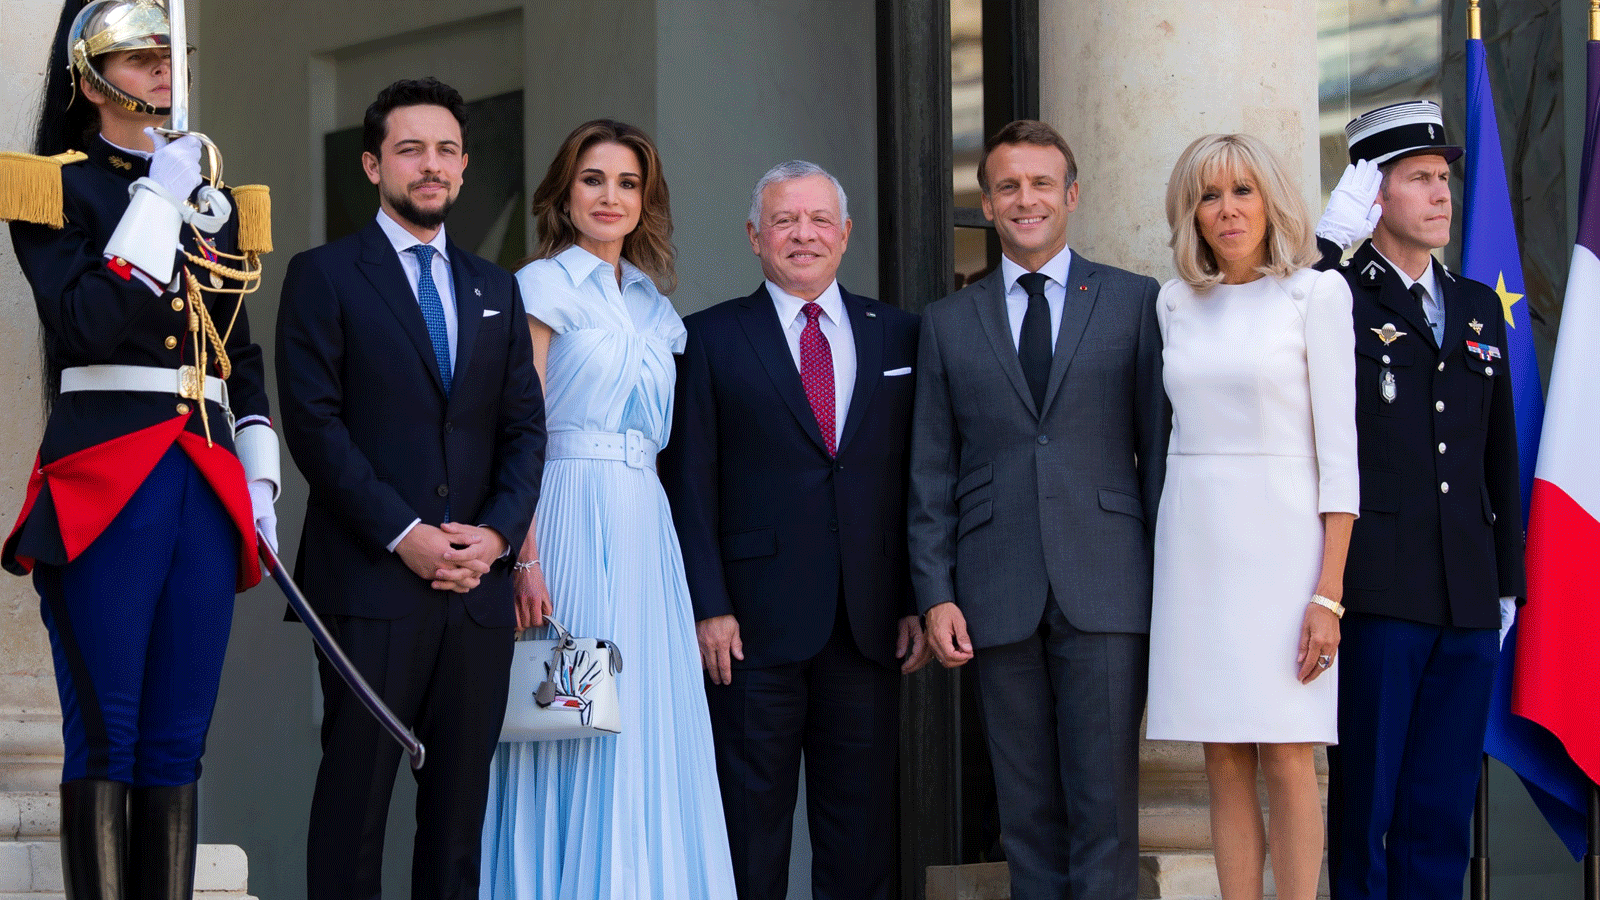 الرئيس الفرنسي إيمانويل ماكرون وزوجته يستقبلان العاهل الأردني وزوجته ونجله في قصر الإليزيه(تويتر)